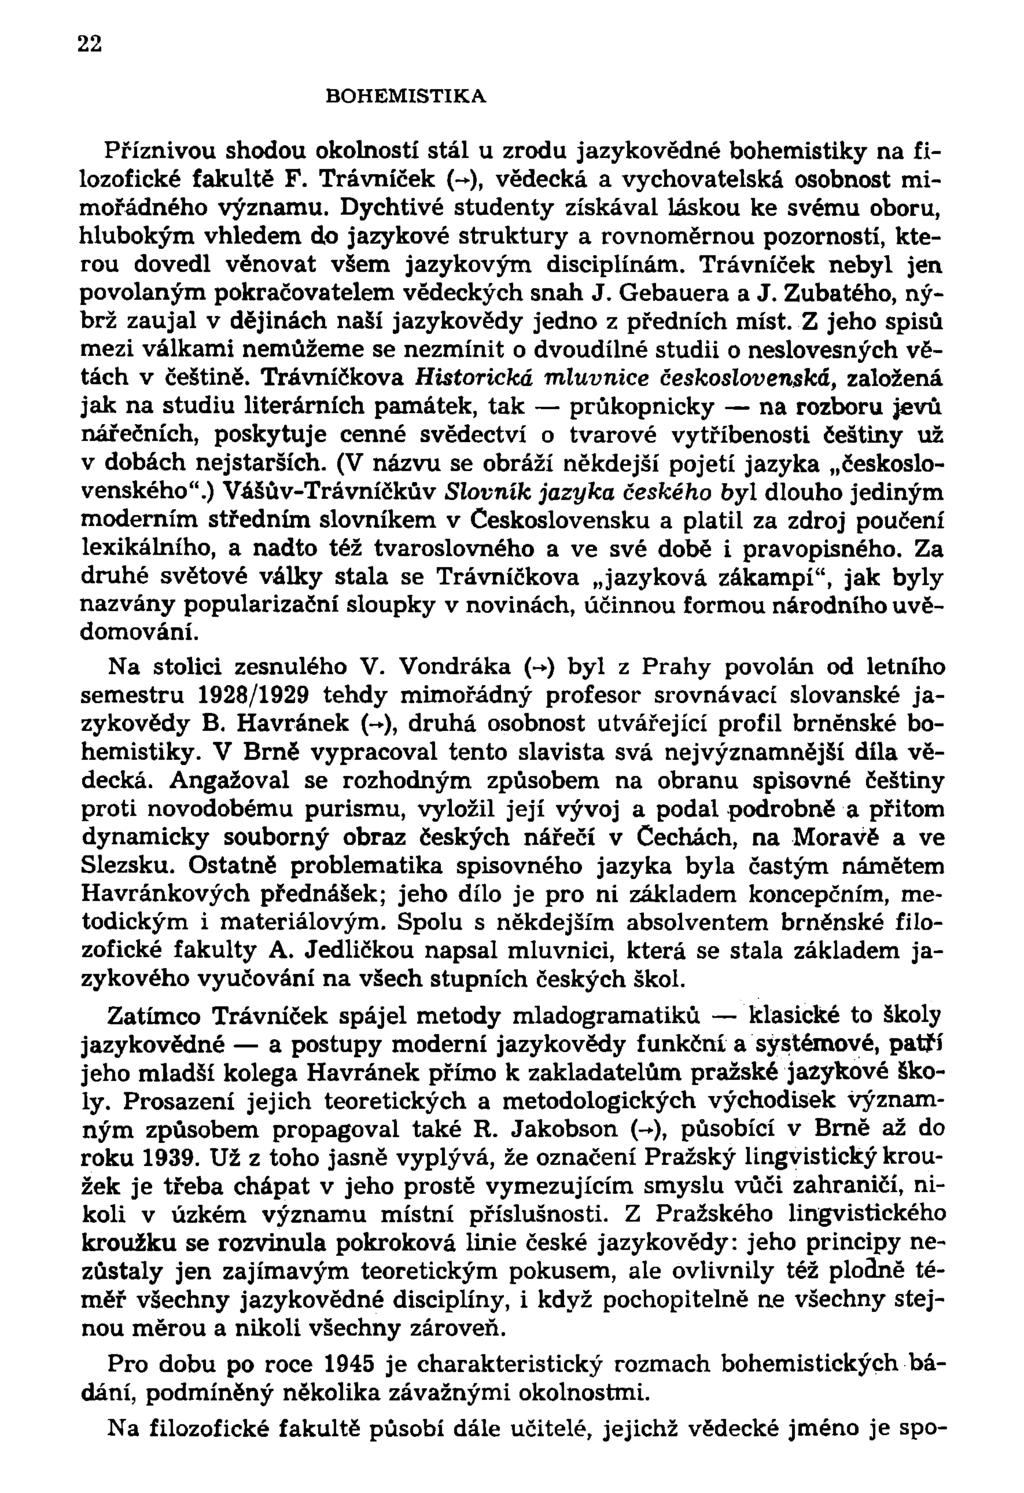 22 BOHEMISTIKA Příznivou shodou okolností stál u zrodu jazykovědné bohemistiky na filozofické fakultě F. Trávníček (-), vědecká a vychovatelská osobnost mimořádného významu.